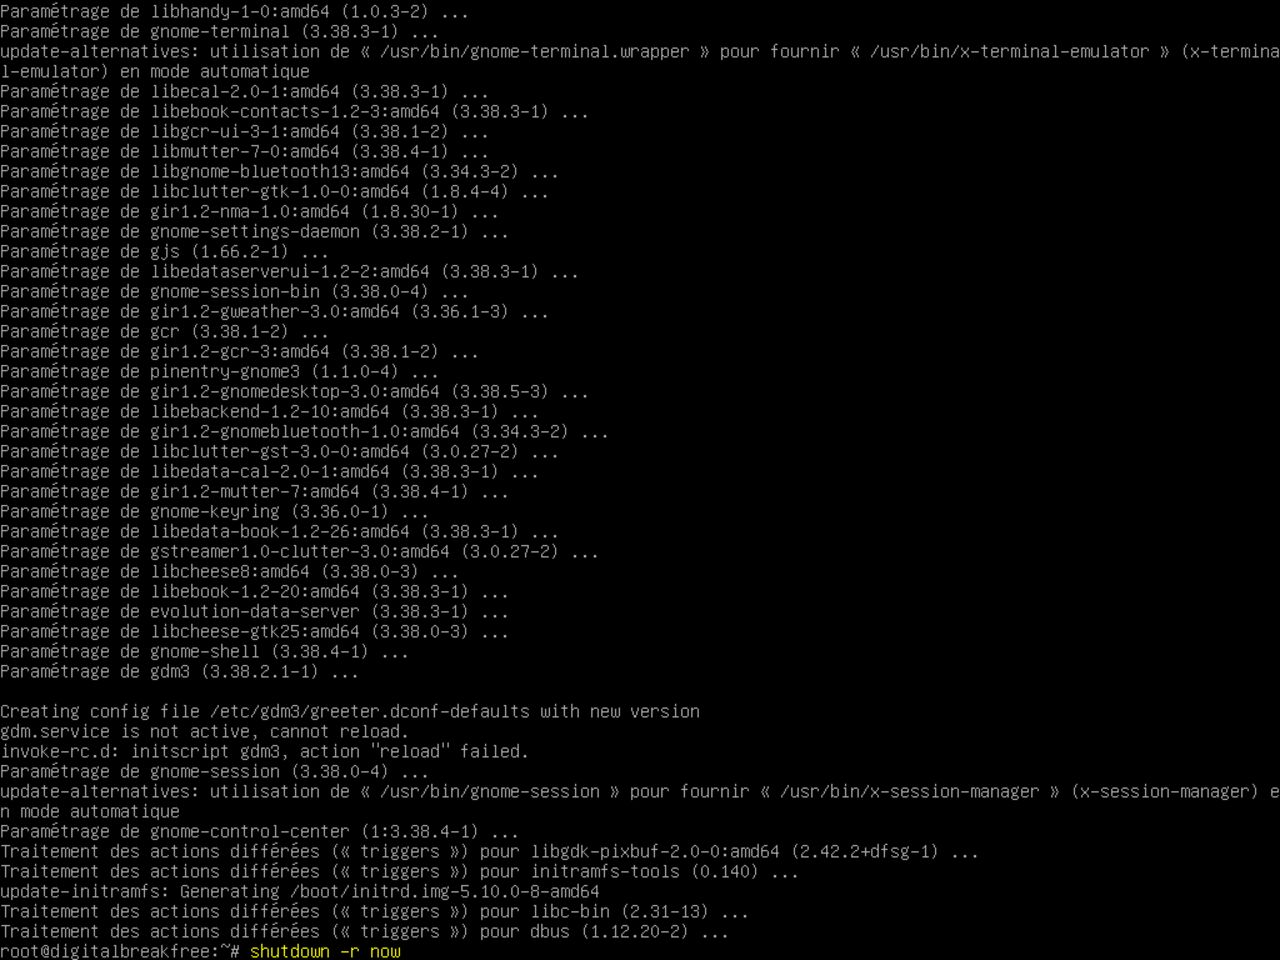 Mon premier ordinateur Linux - Re-initier le système après avoir installé un gnome minimal au-dessus de Debian (arrêt / redémarrage)